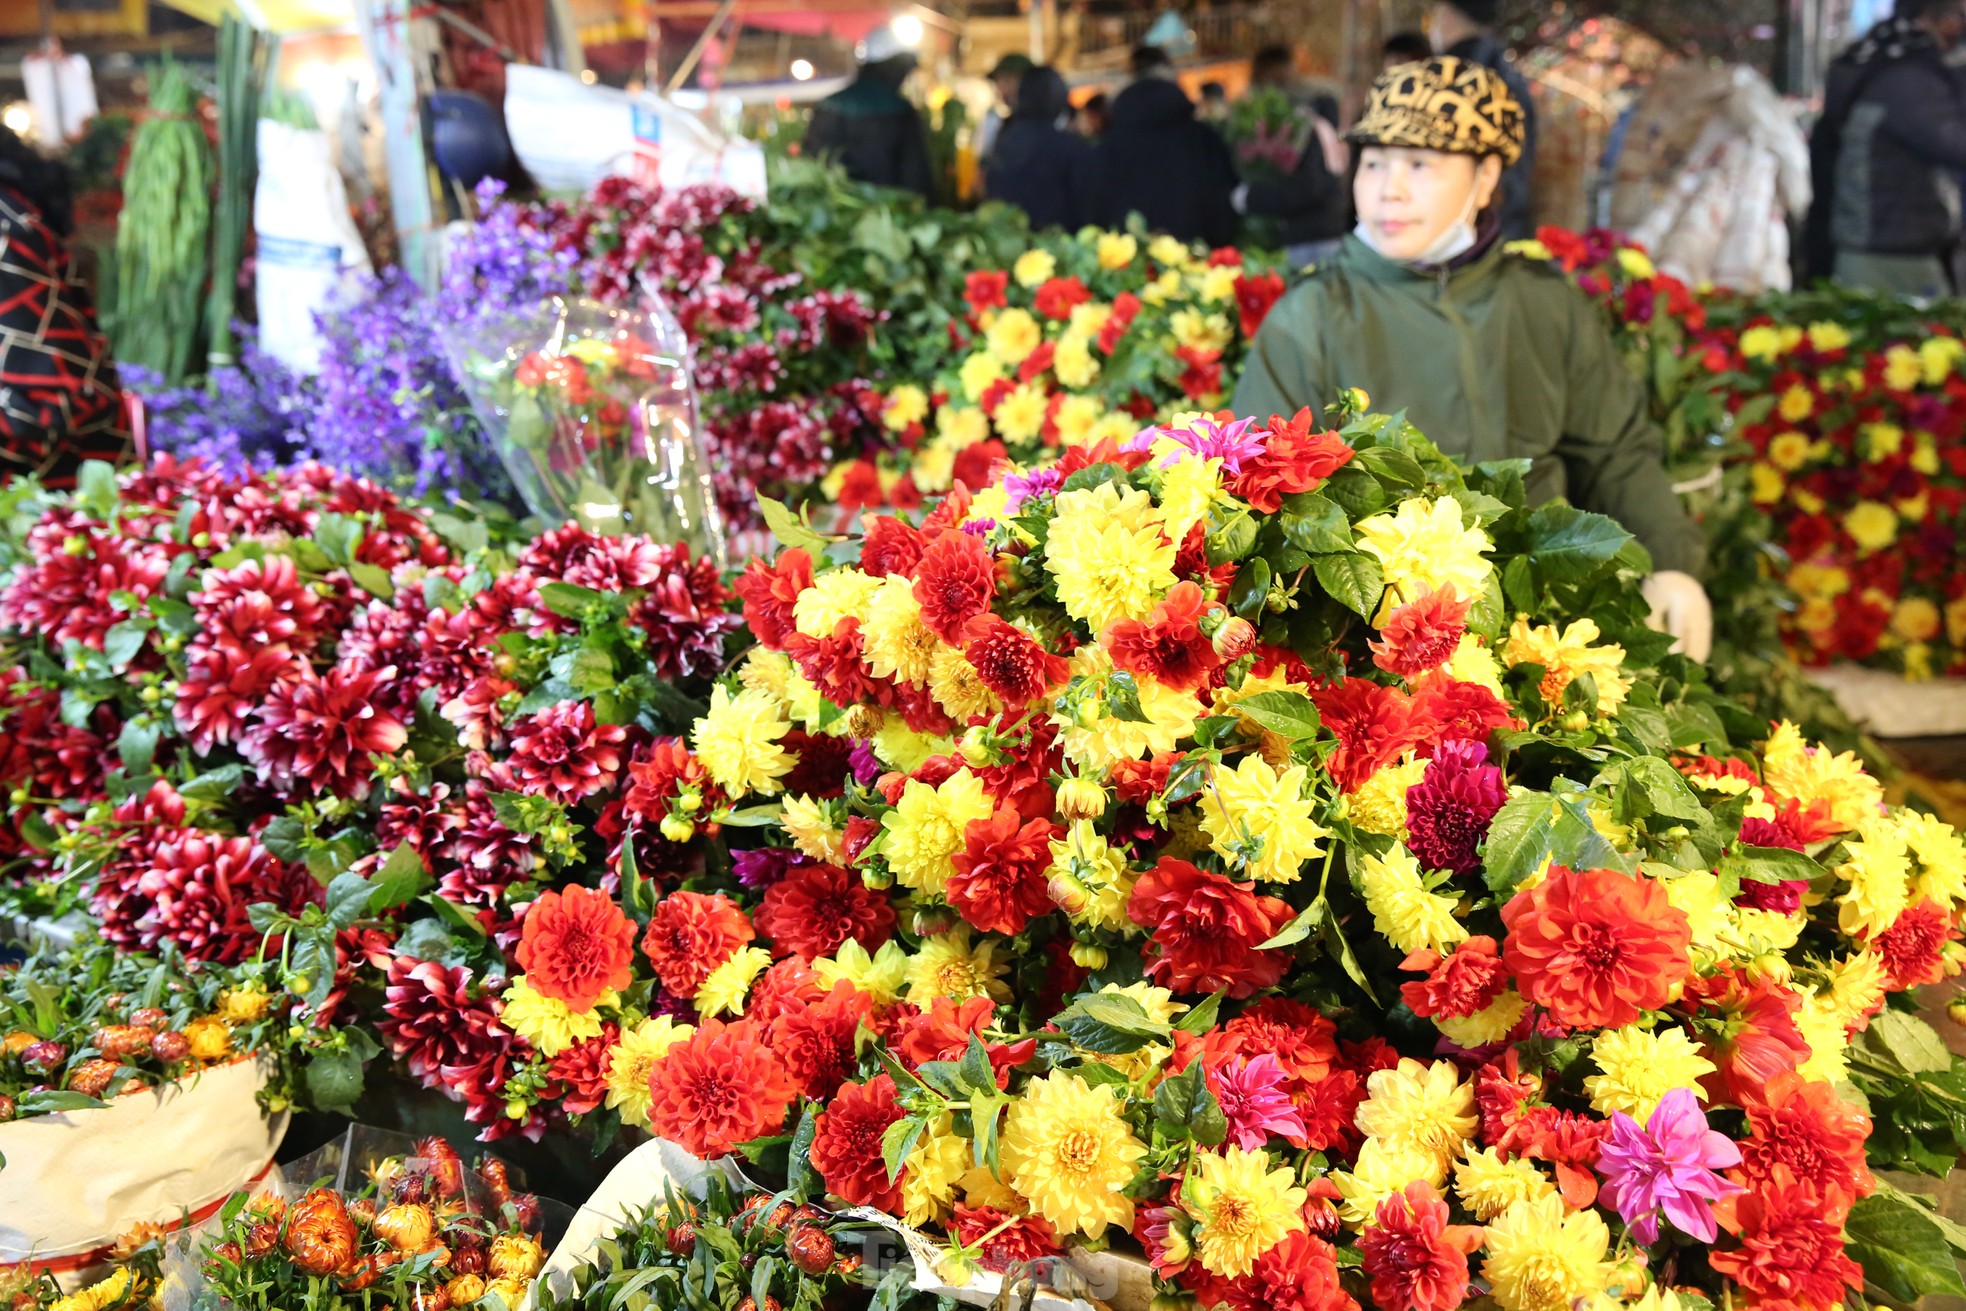 Đêm không ngủ ở chợ hoa lớn nhất Hà Nội giáp Tết - Ảnh 3.